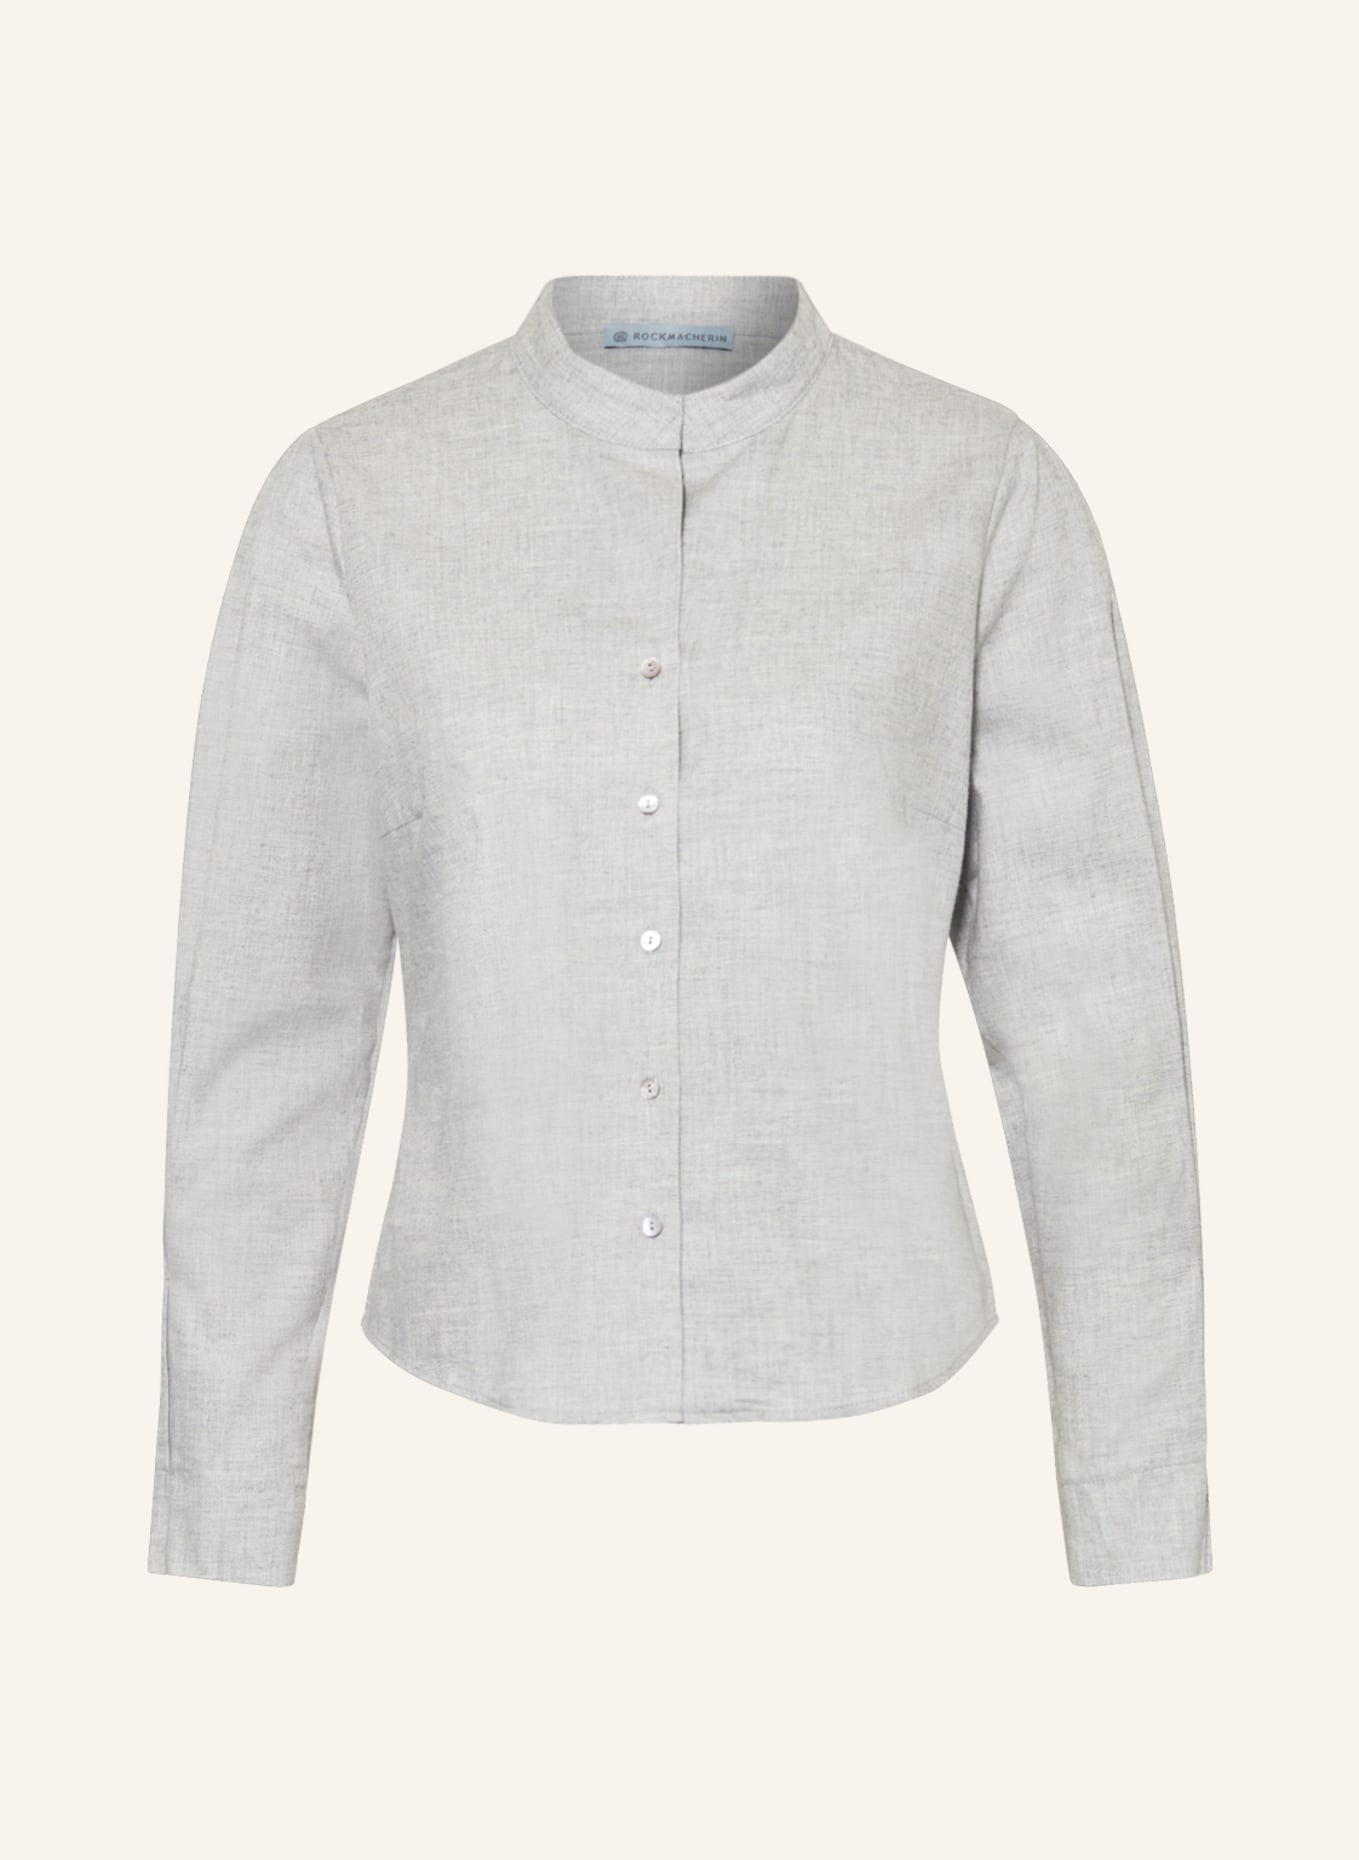 ROCKMACHERIN Trachten blouse NORA, Color: GRAY (Image 1)